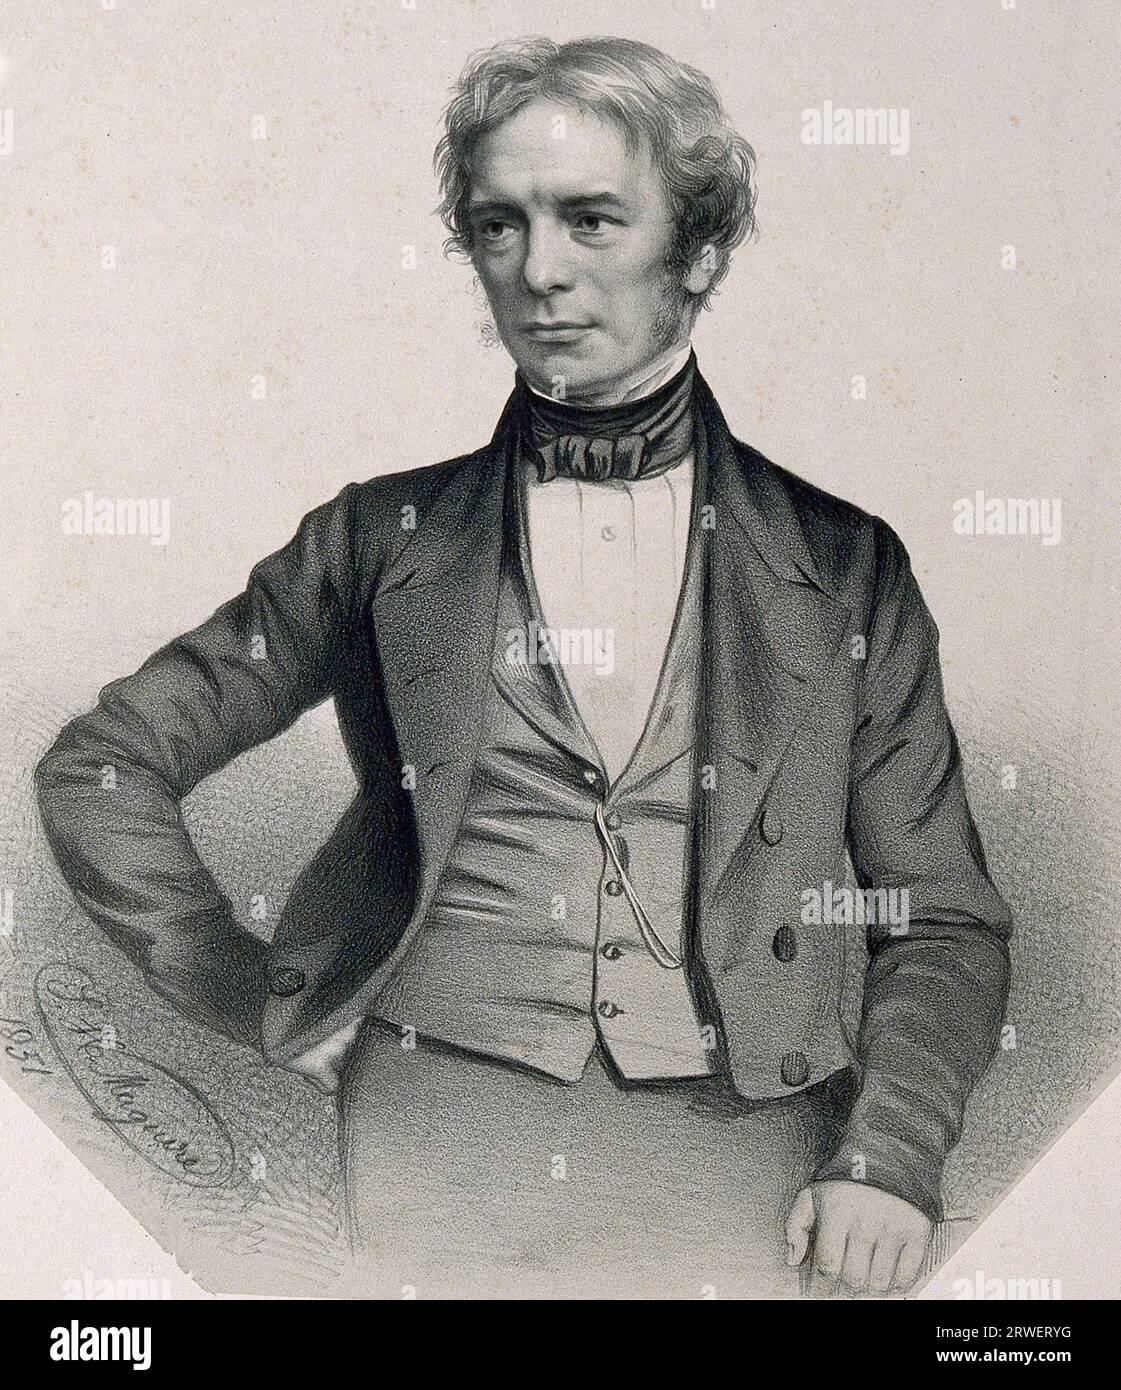 Michael Faraday (22 settembre 1791 - 25 agosto 1867) è stato un naturalista inglese considerato uno dei più importanti fisici sperimentali, storica riproduzione digitalmente restaurata di un originale di quel periodo Foto Stock